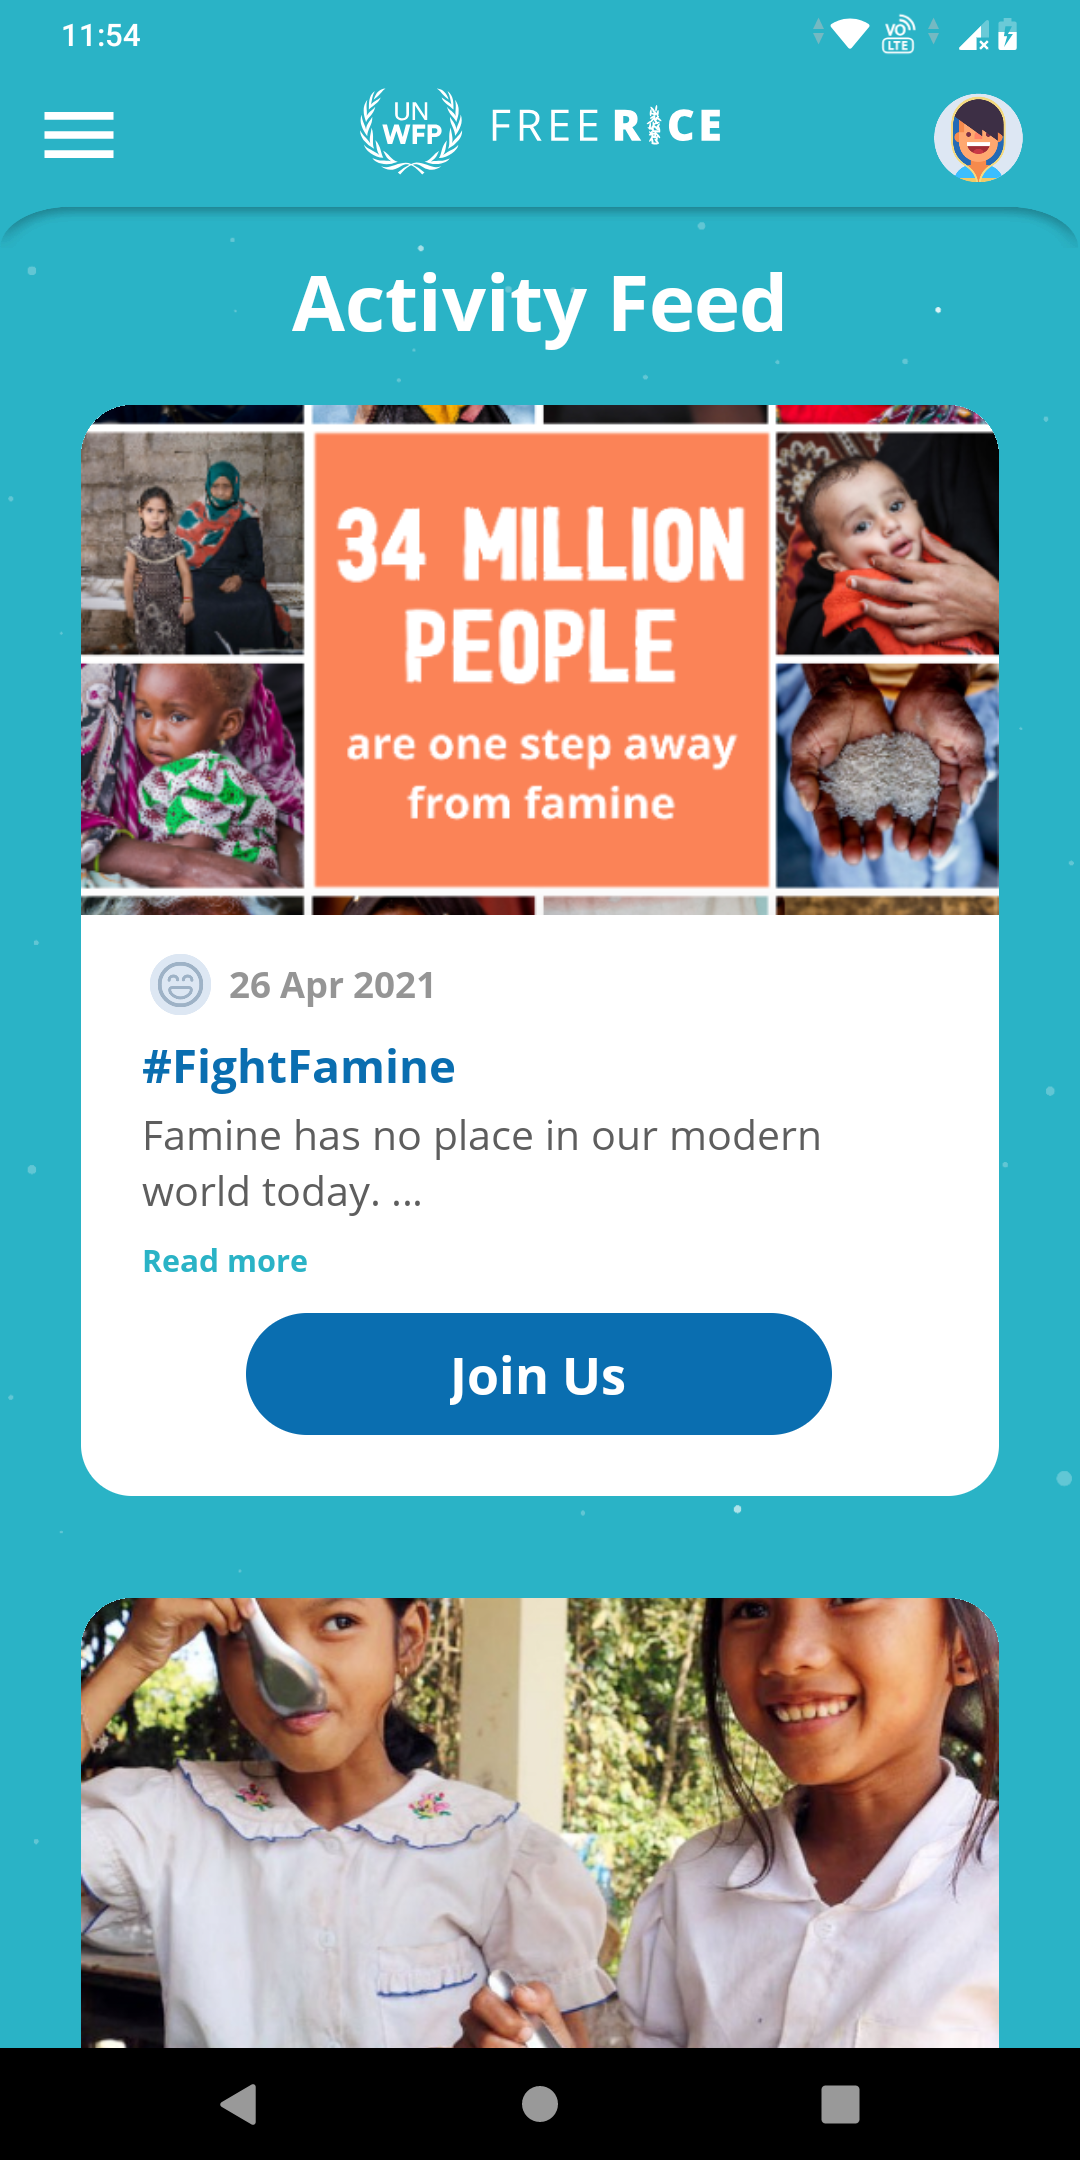 Freerice app charity activity feed